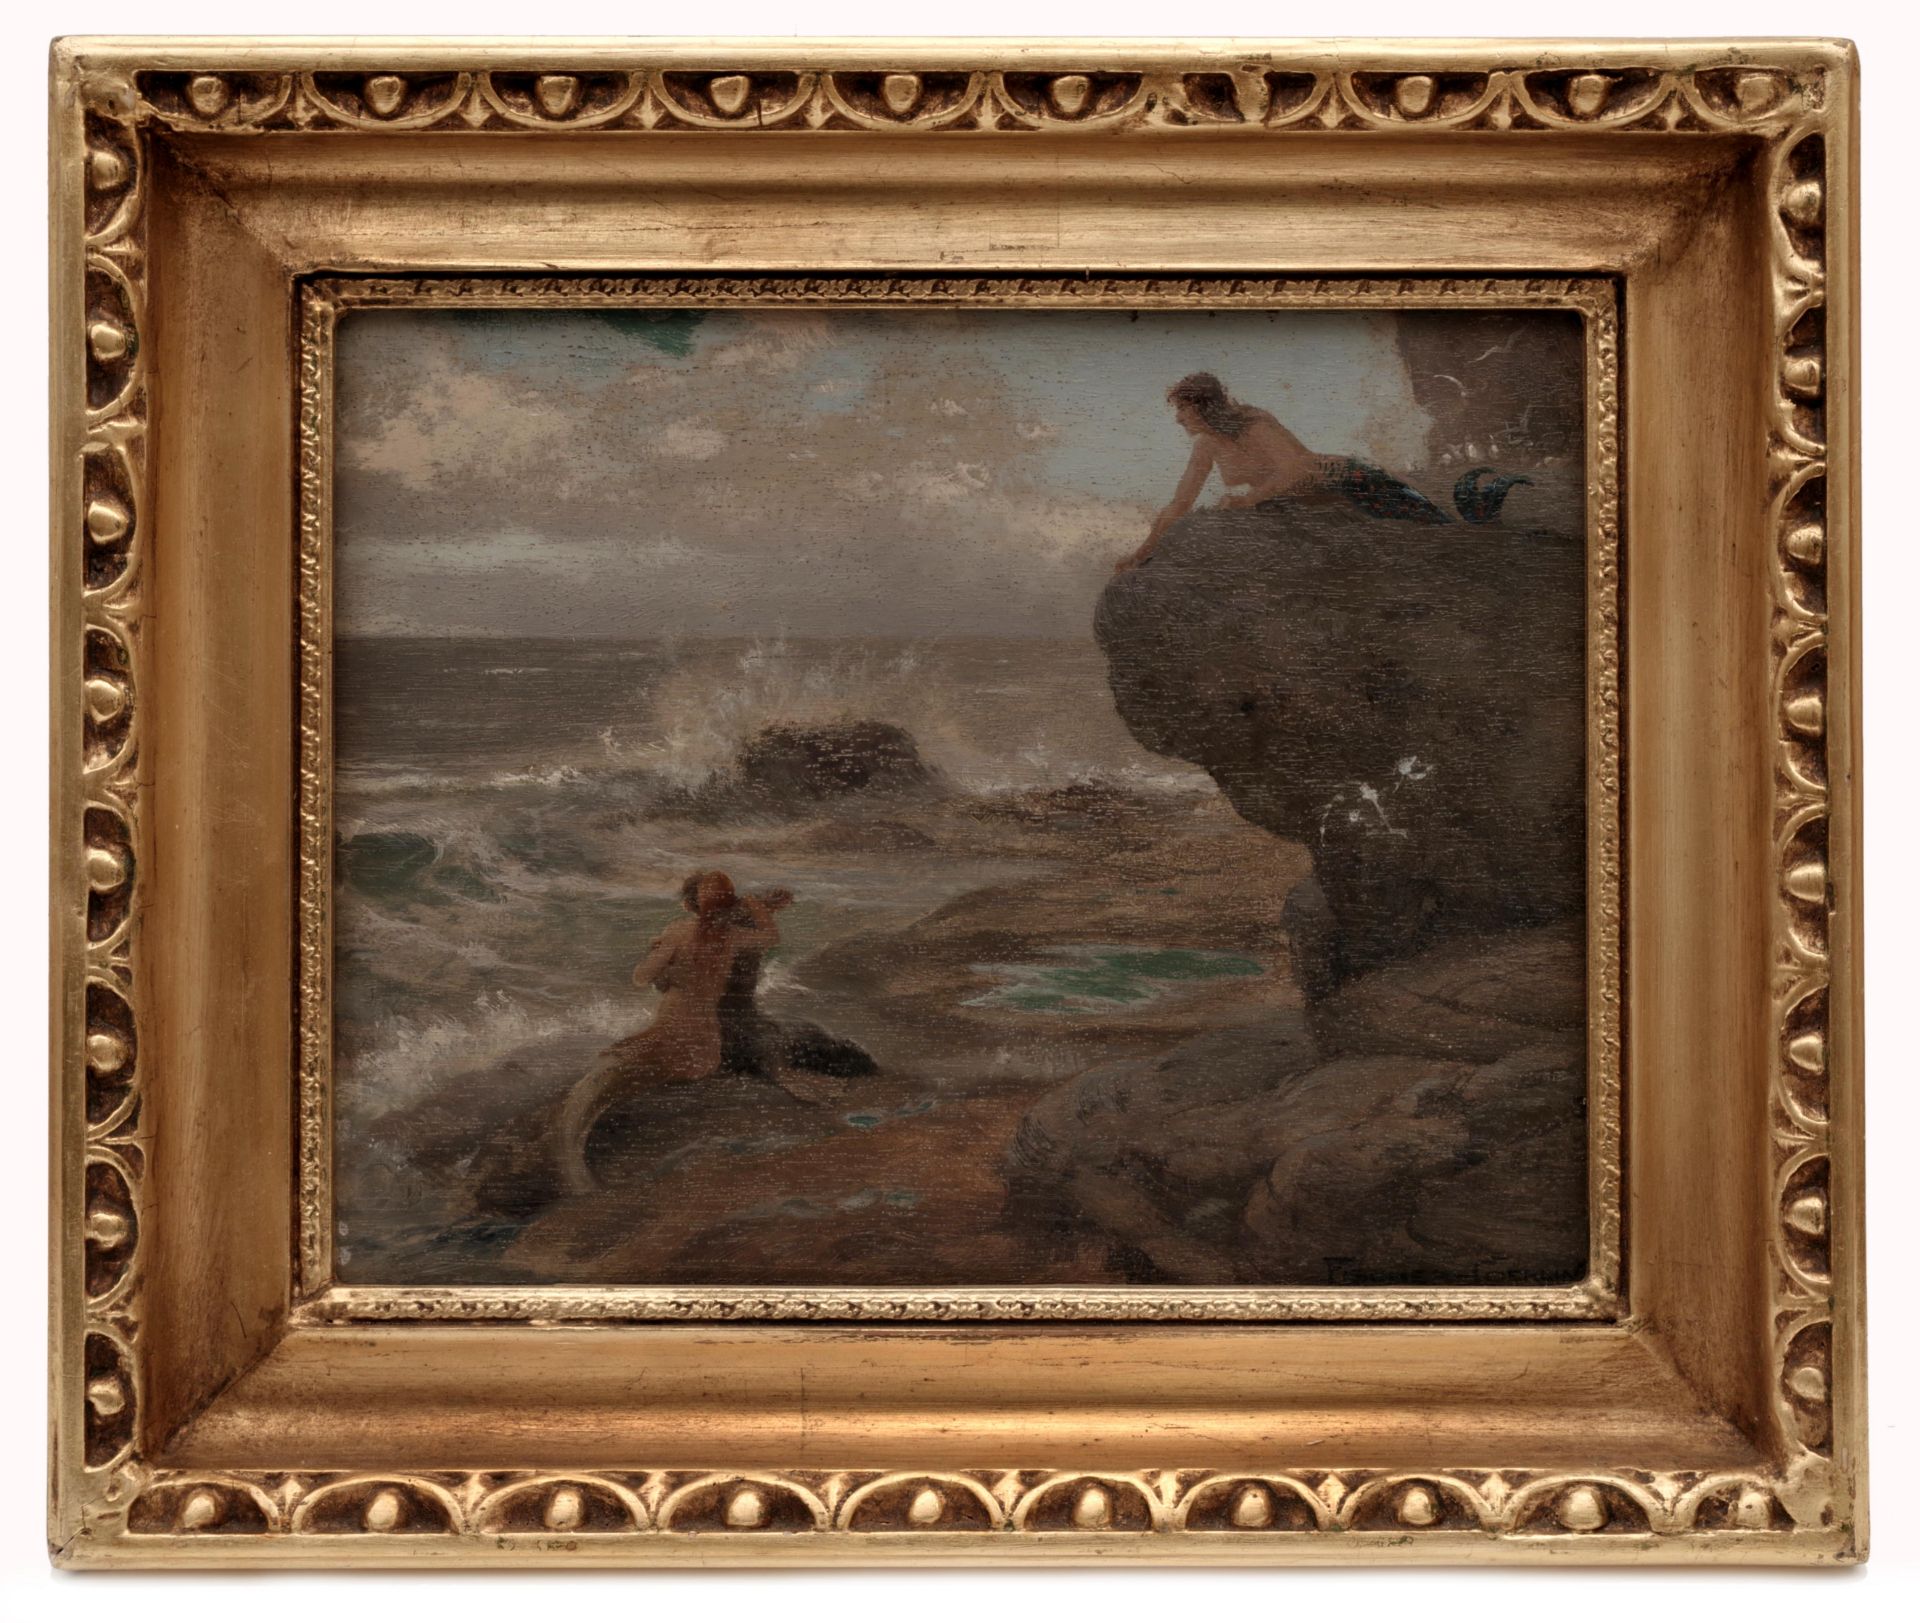 Sea Nymphs on the Rocky Coast by Ernst Albert Fischer-CÃ¶rlin